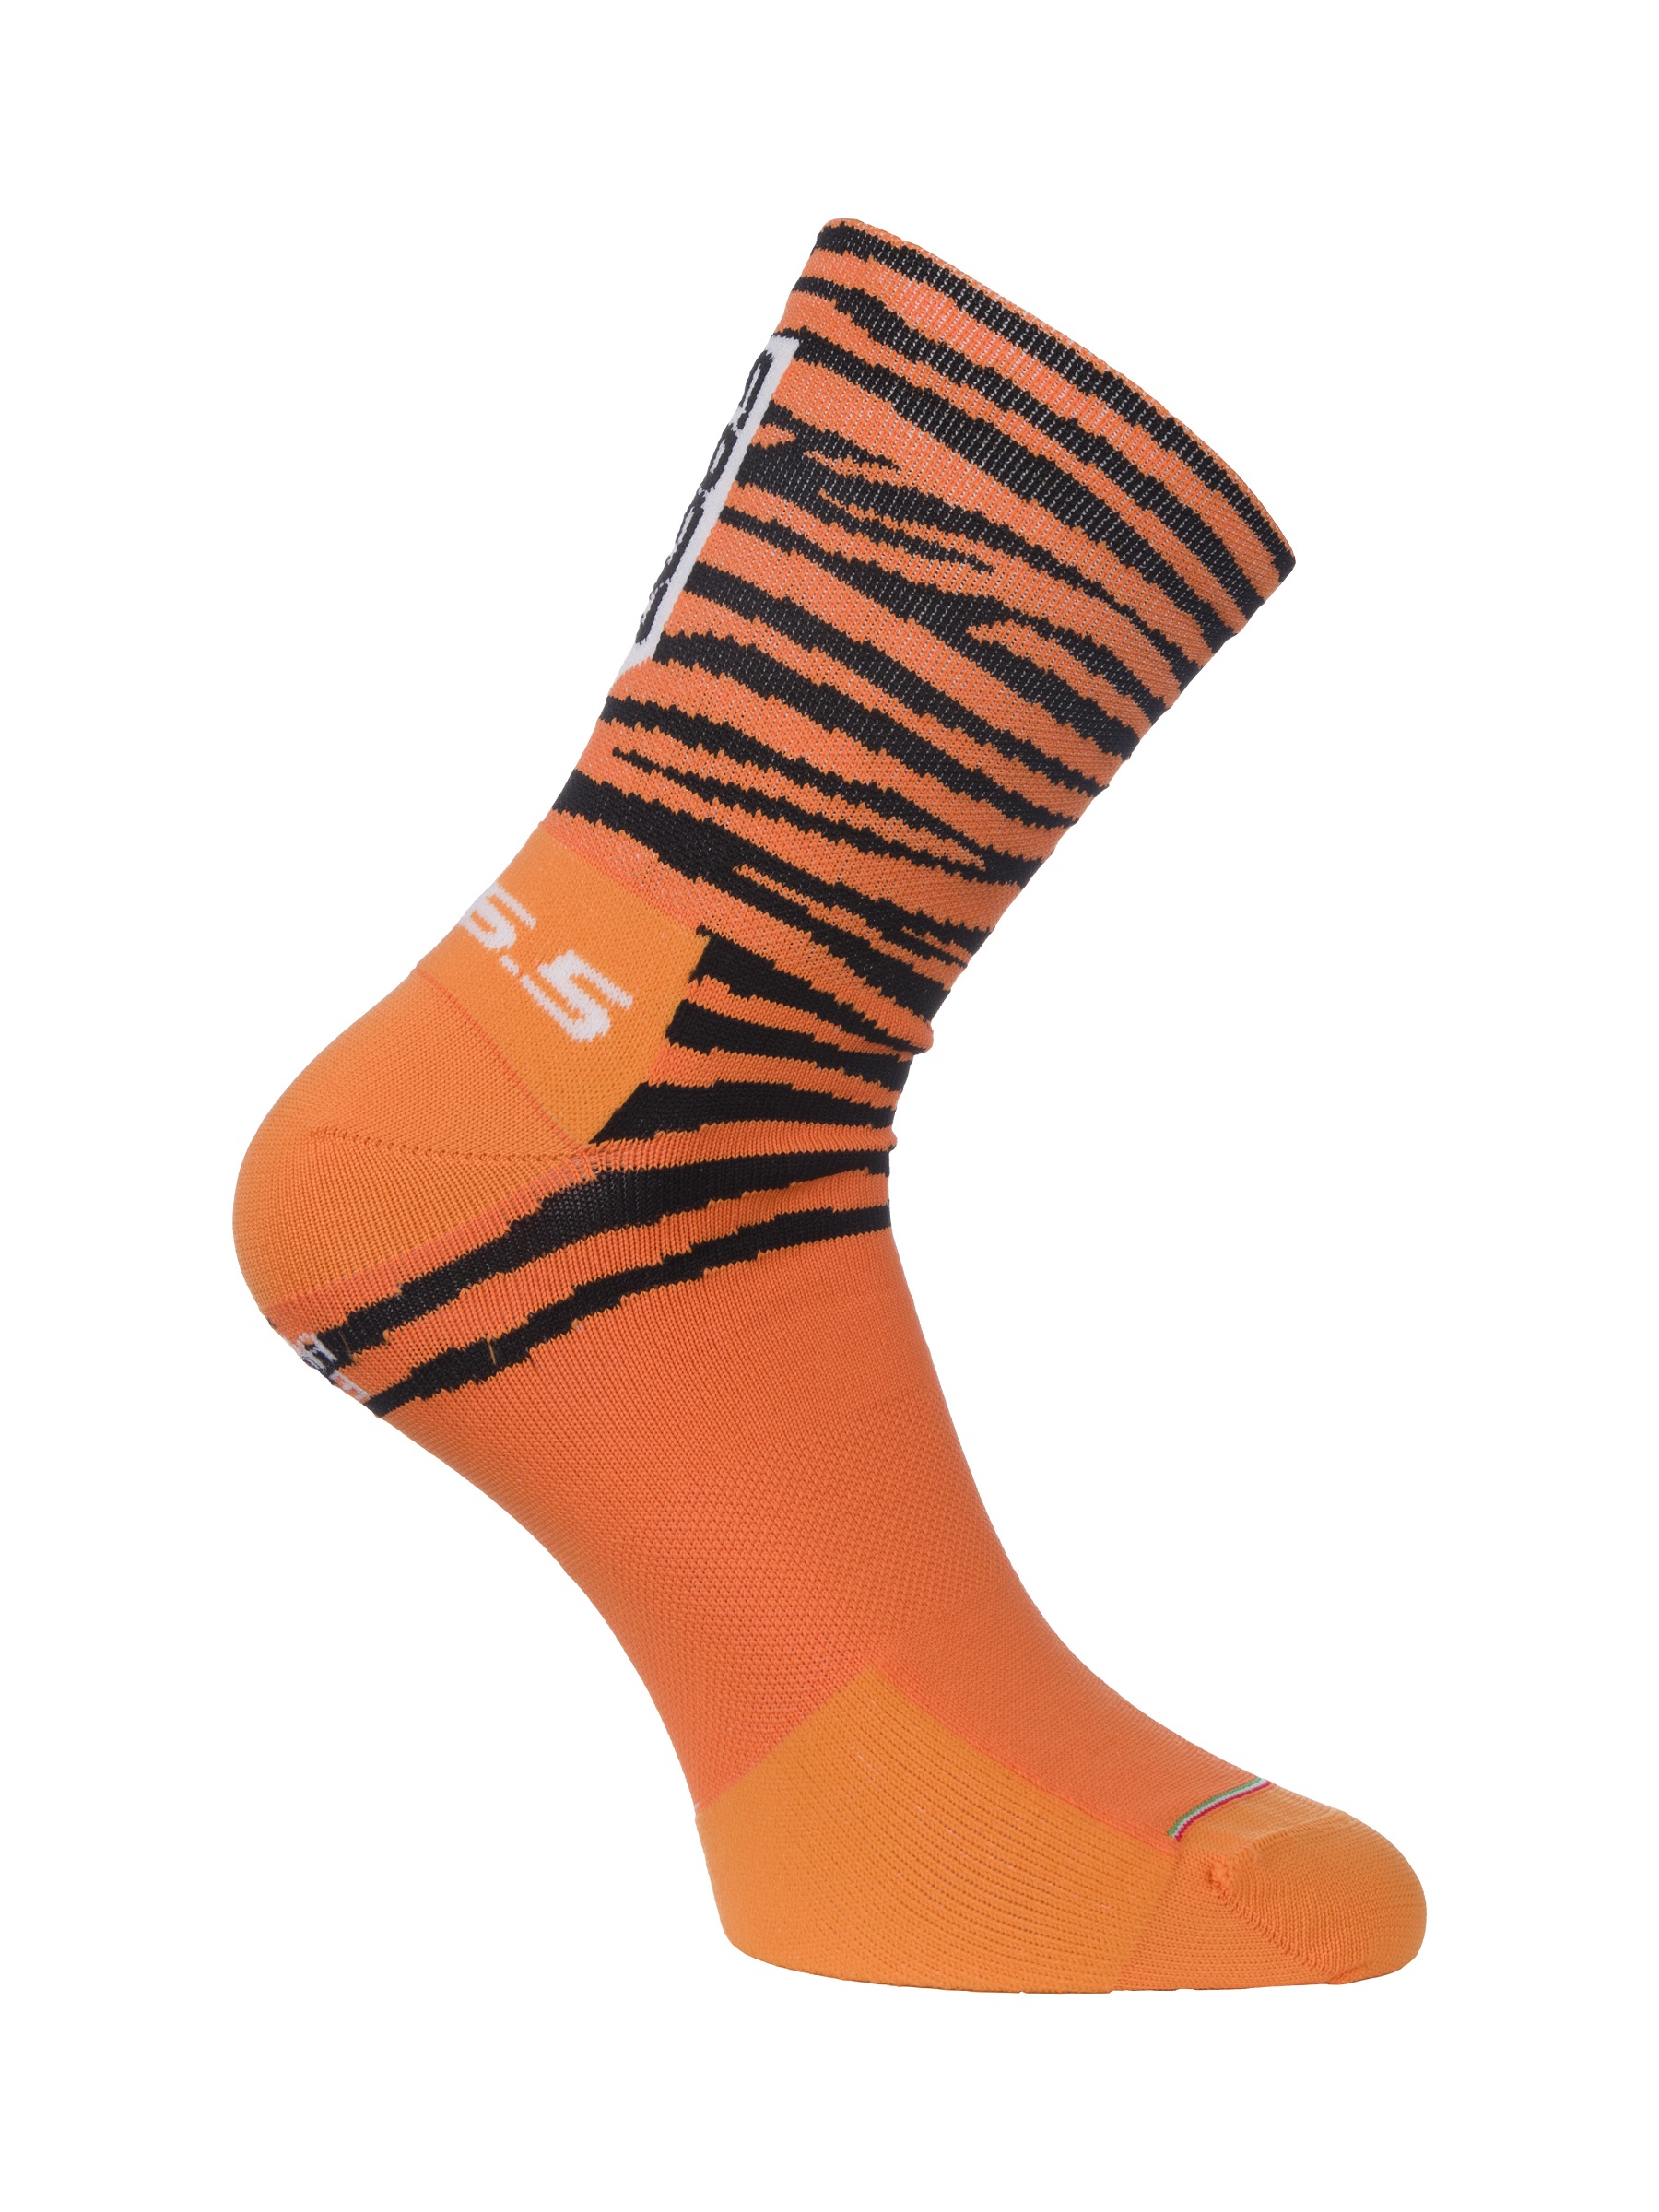 Ultra Tiger Socks • Q36.5